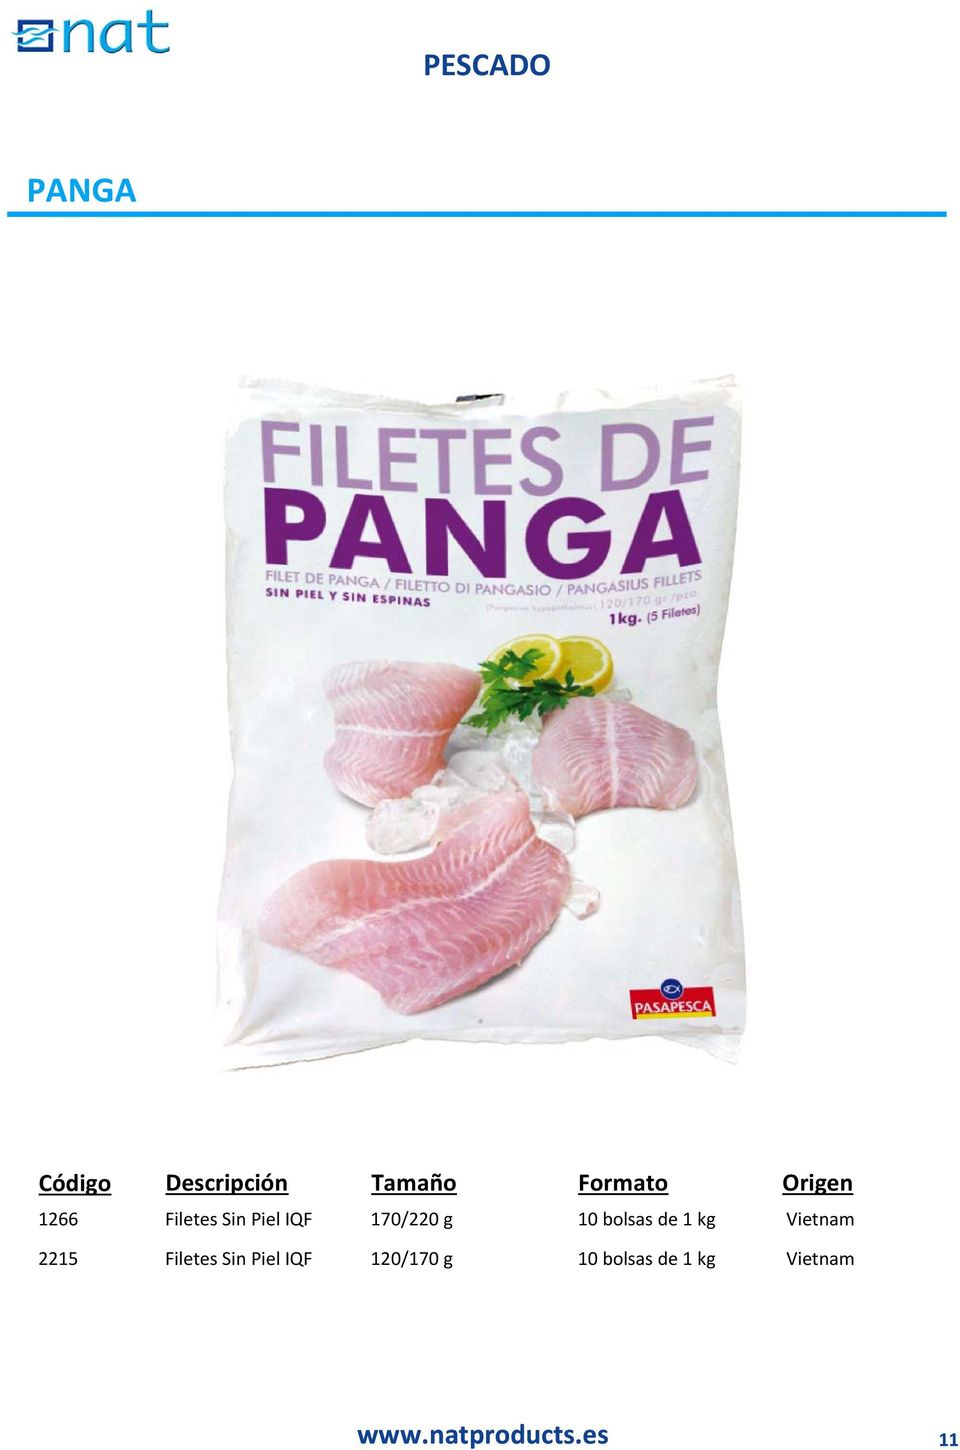 bolsas de 1 kg Vietnam 2215 Filetes Sin Piel IQF